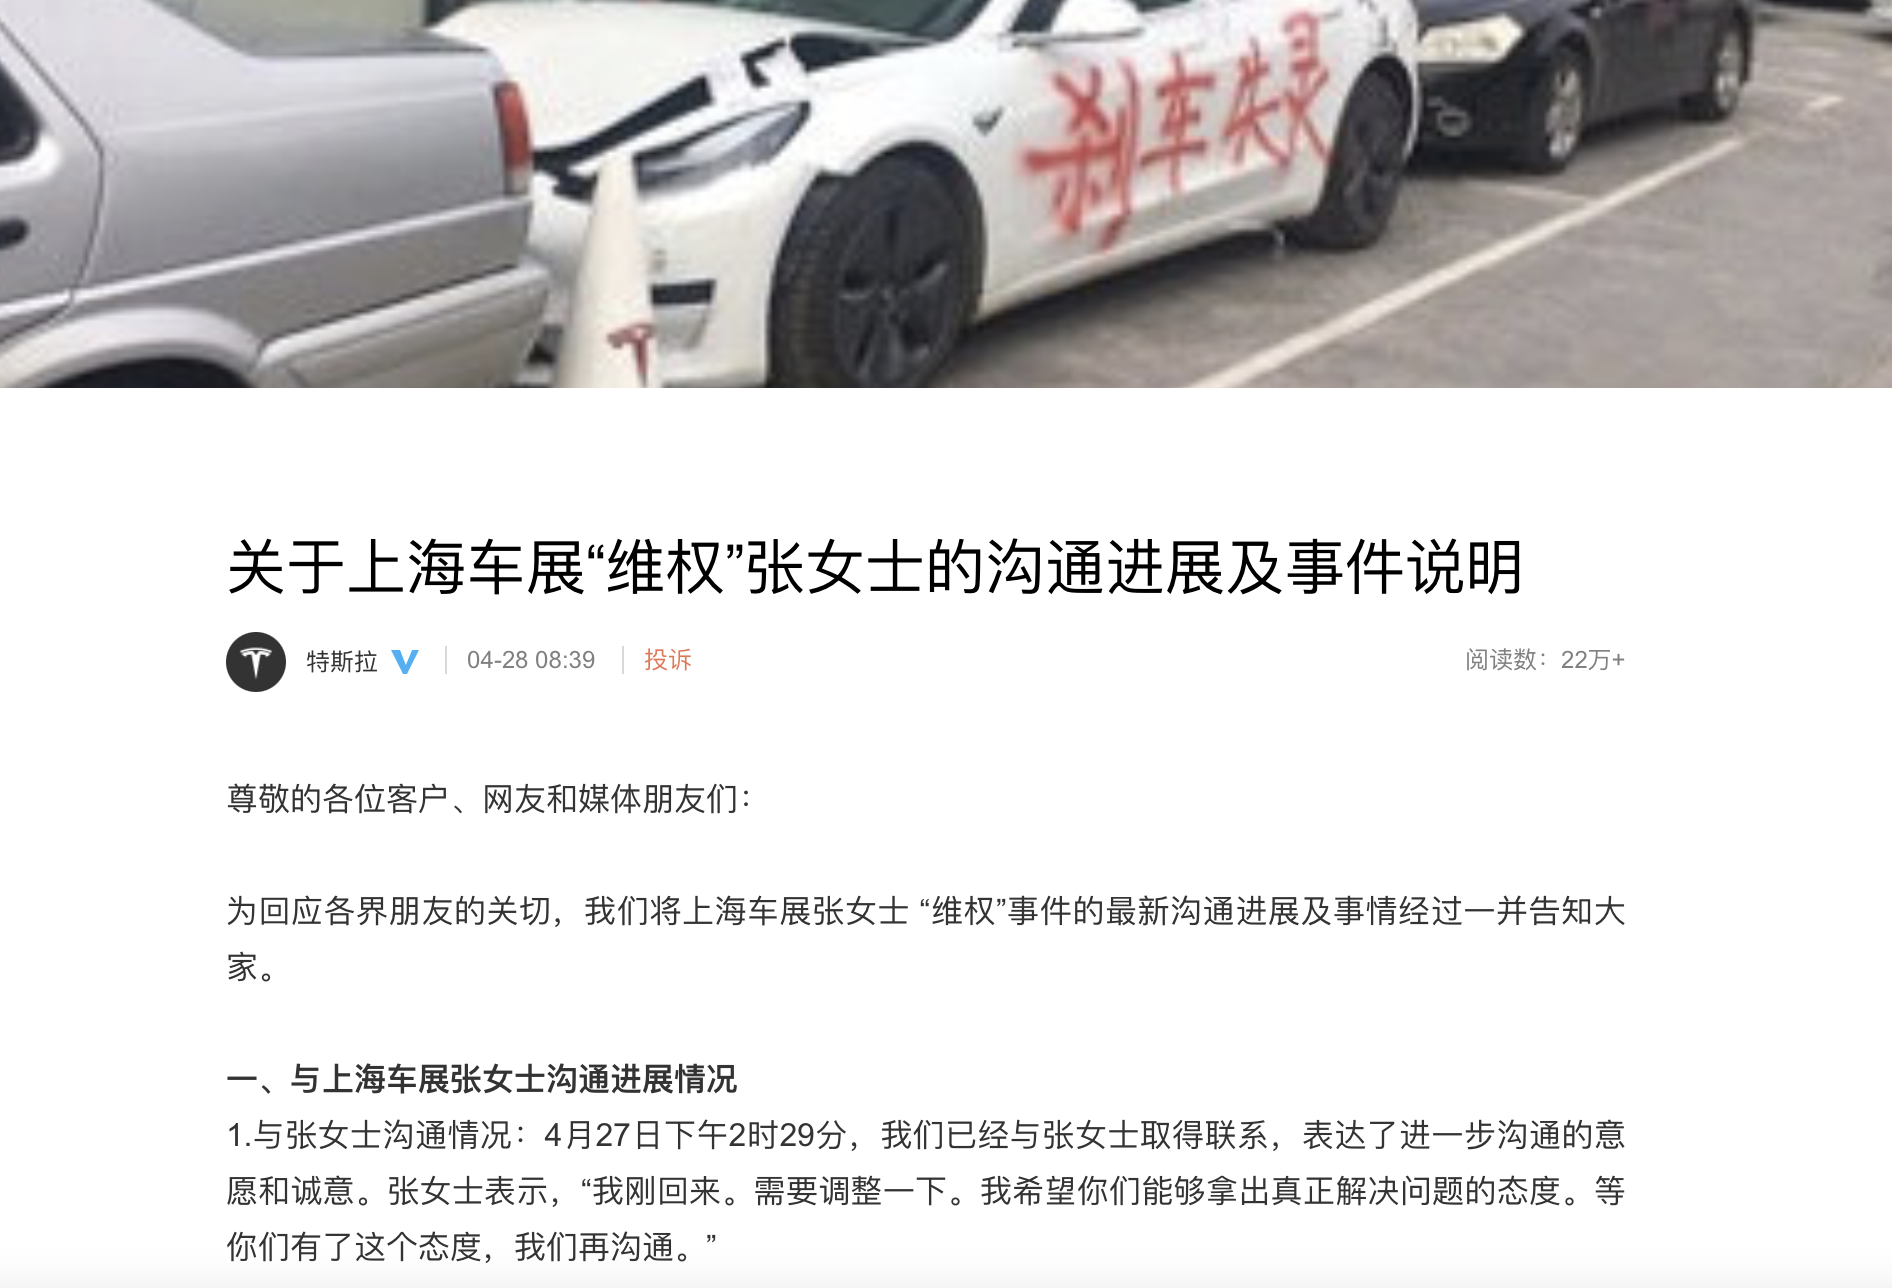 特斯拉微博发布《关于上海车展“维权”张女士的沟通进展及事件说明》